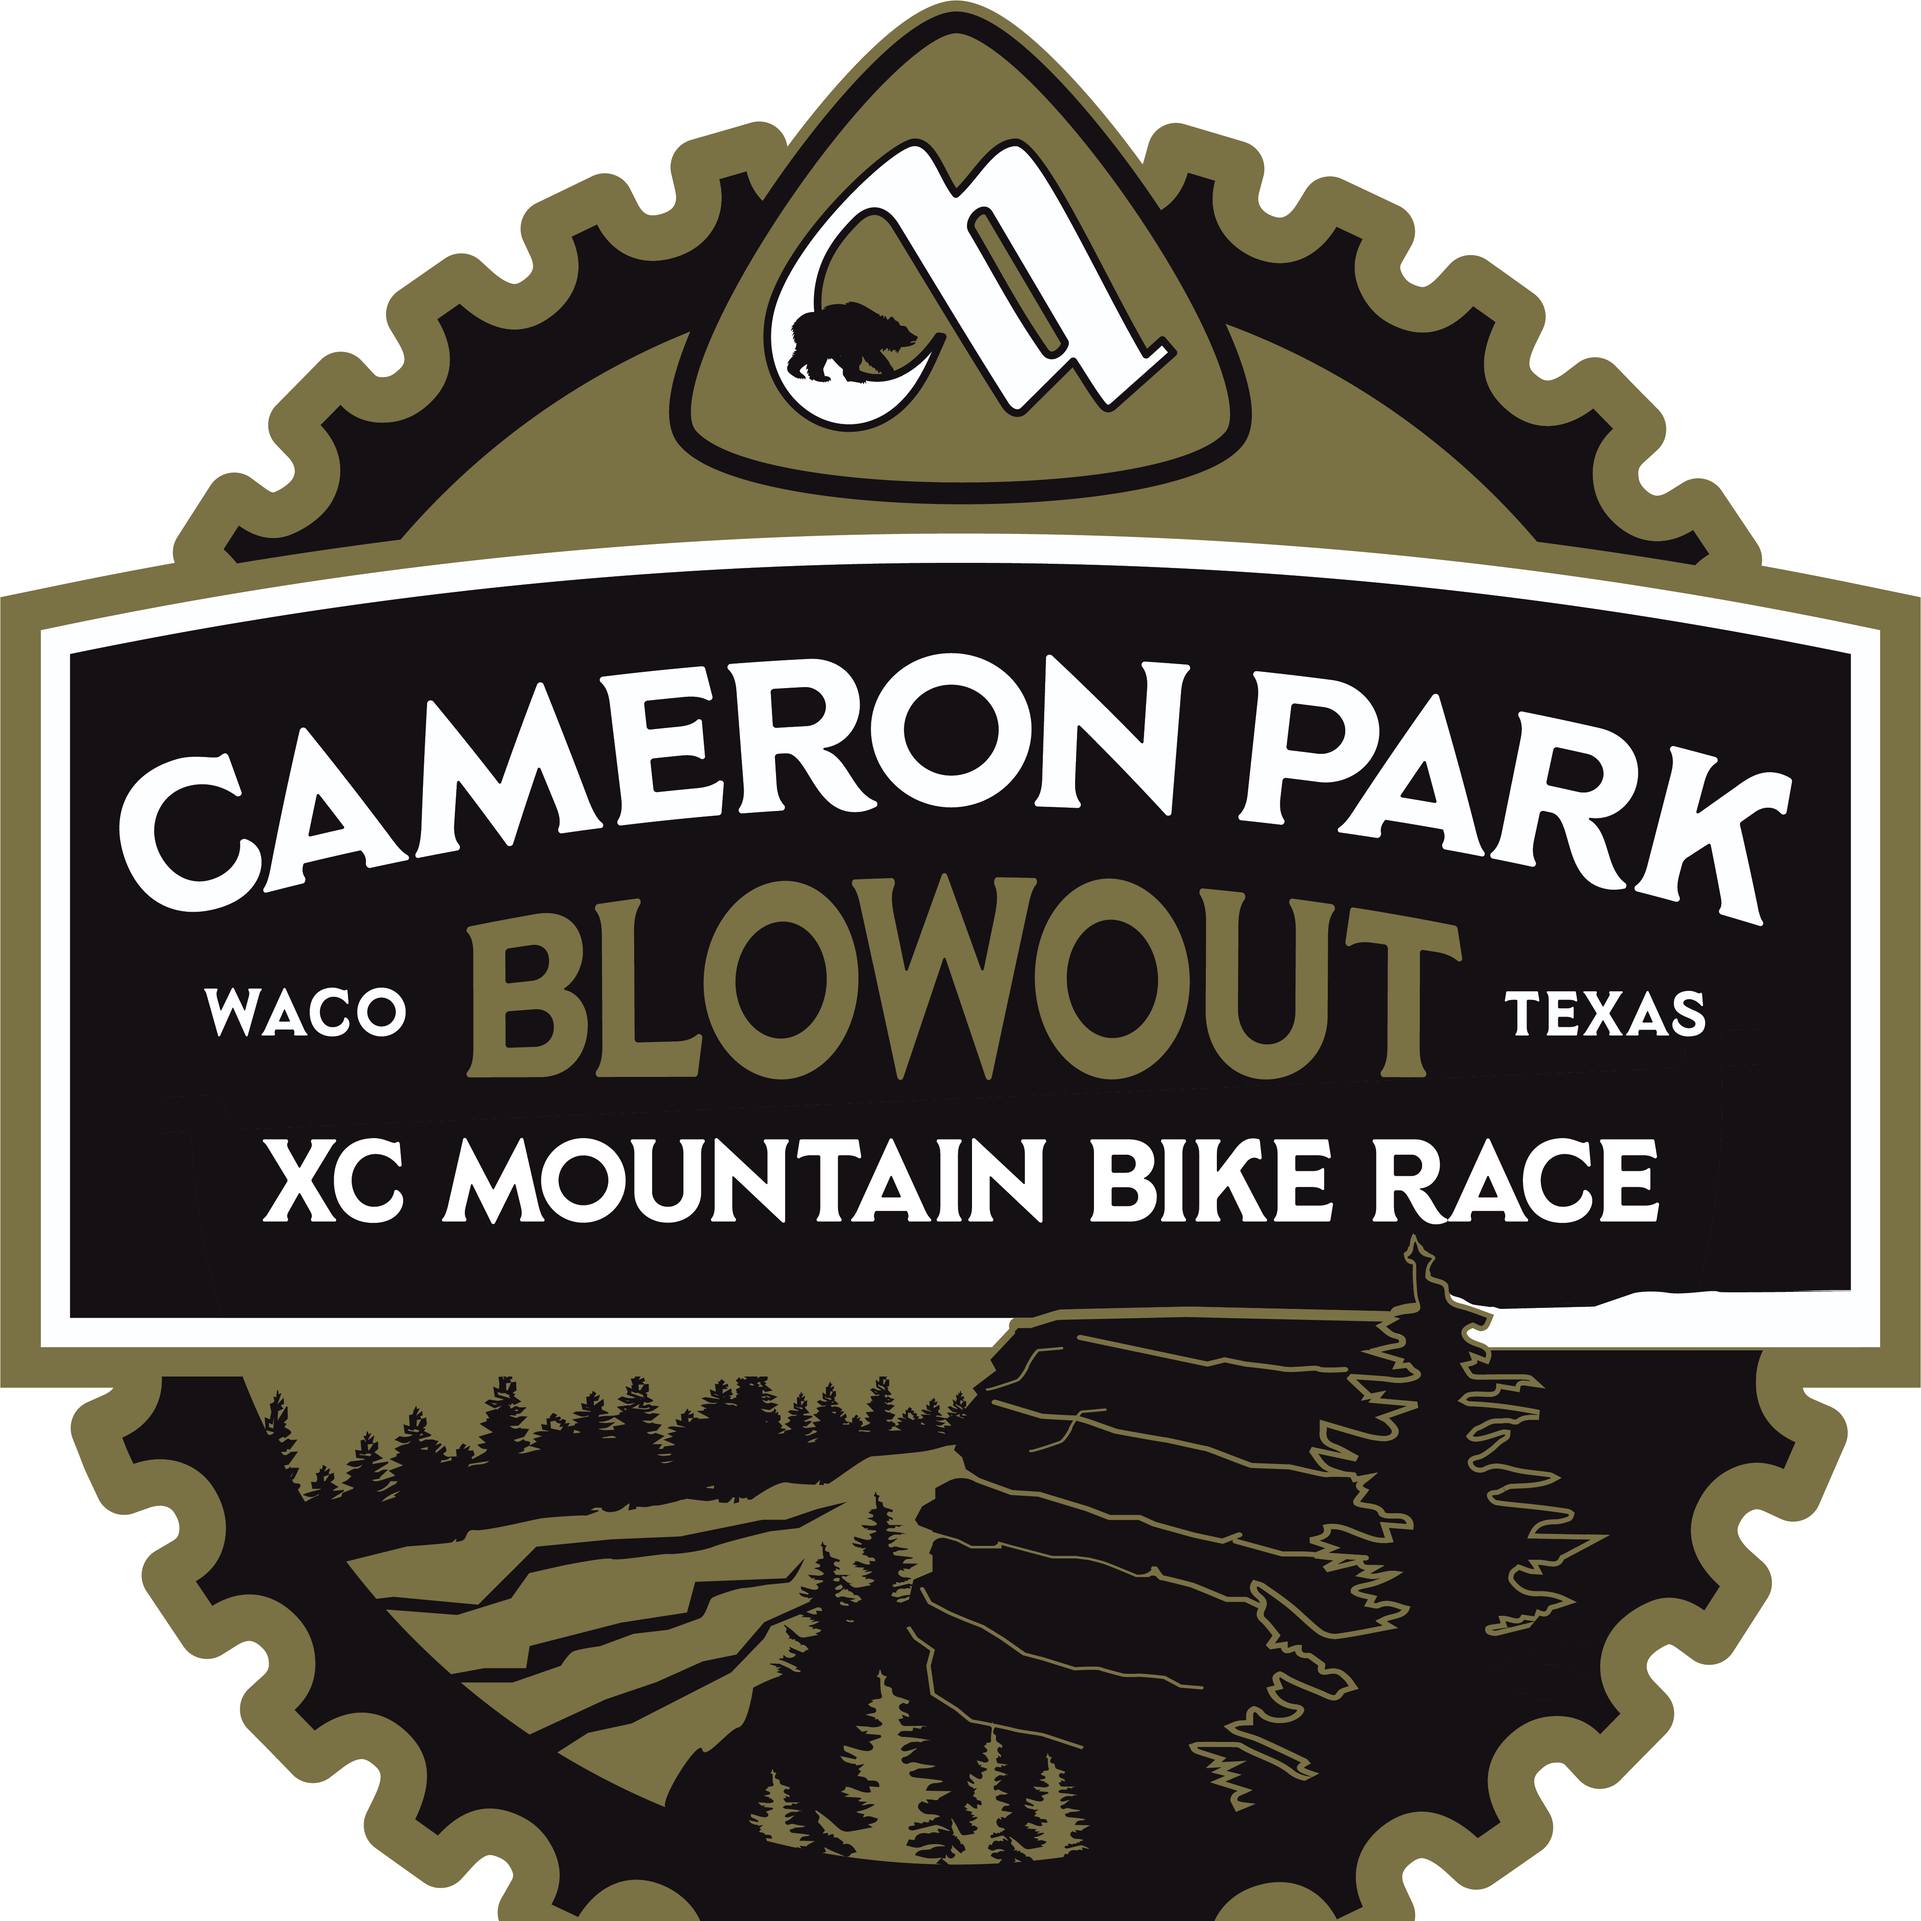 Cameron Park Blowout